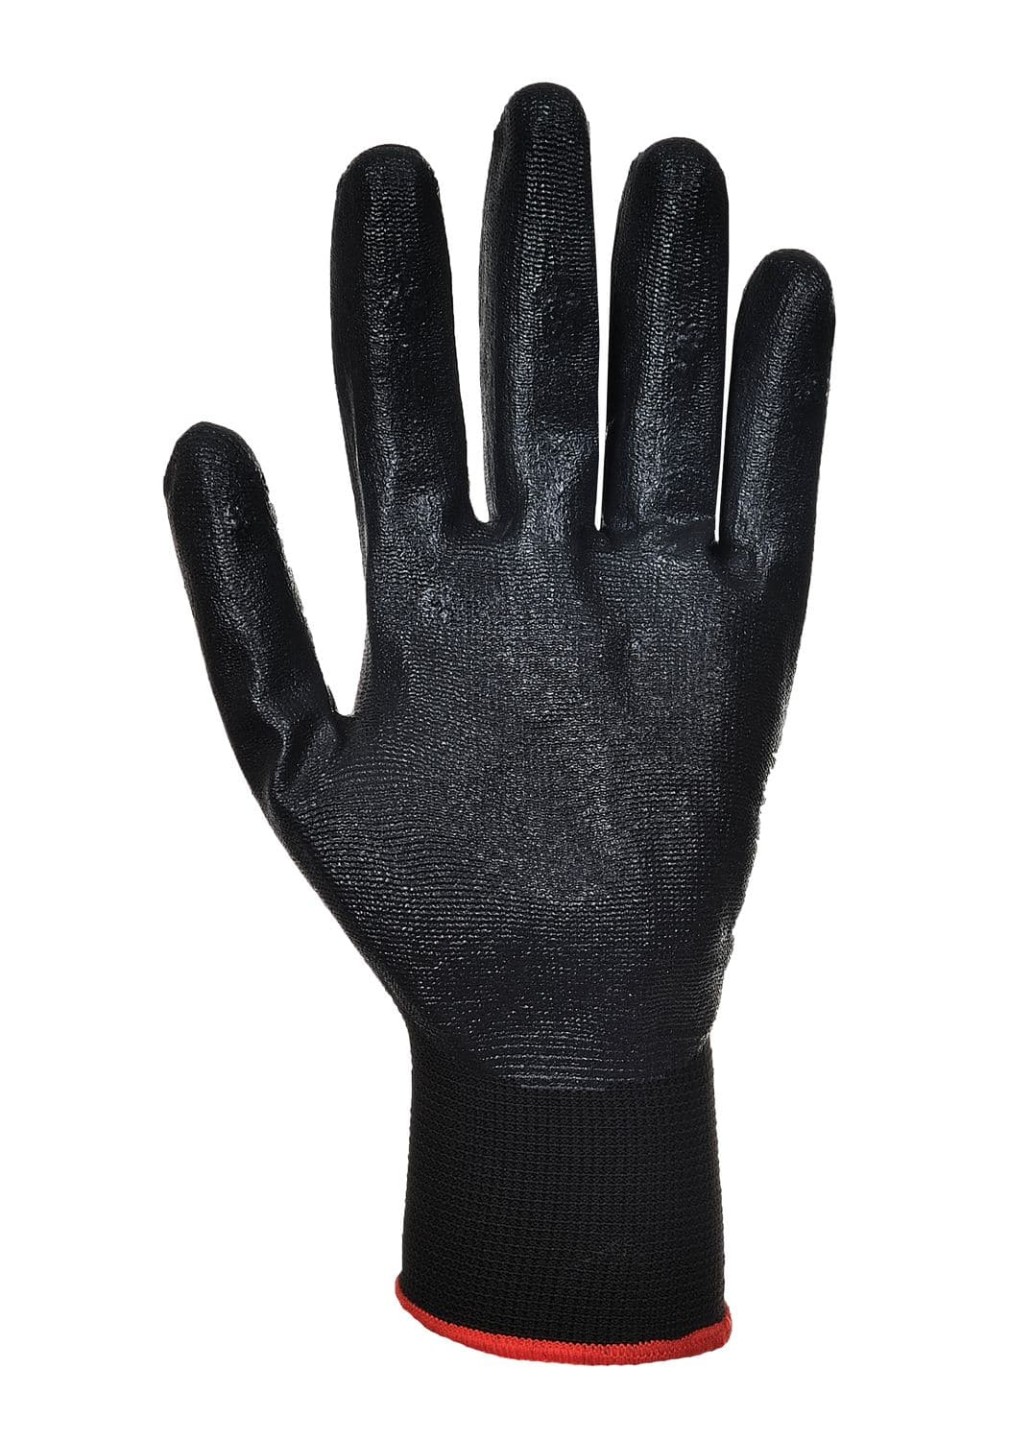 Portwest Dexti-Grip Glove